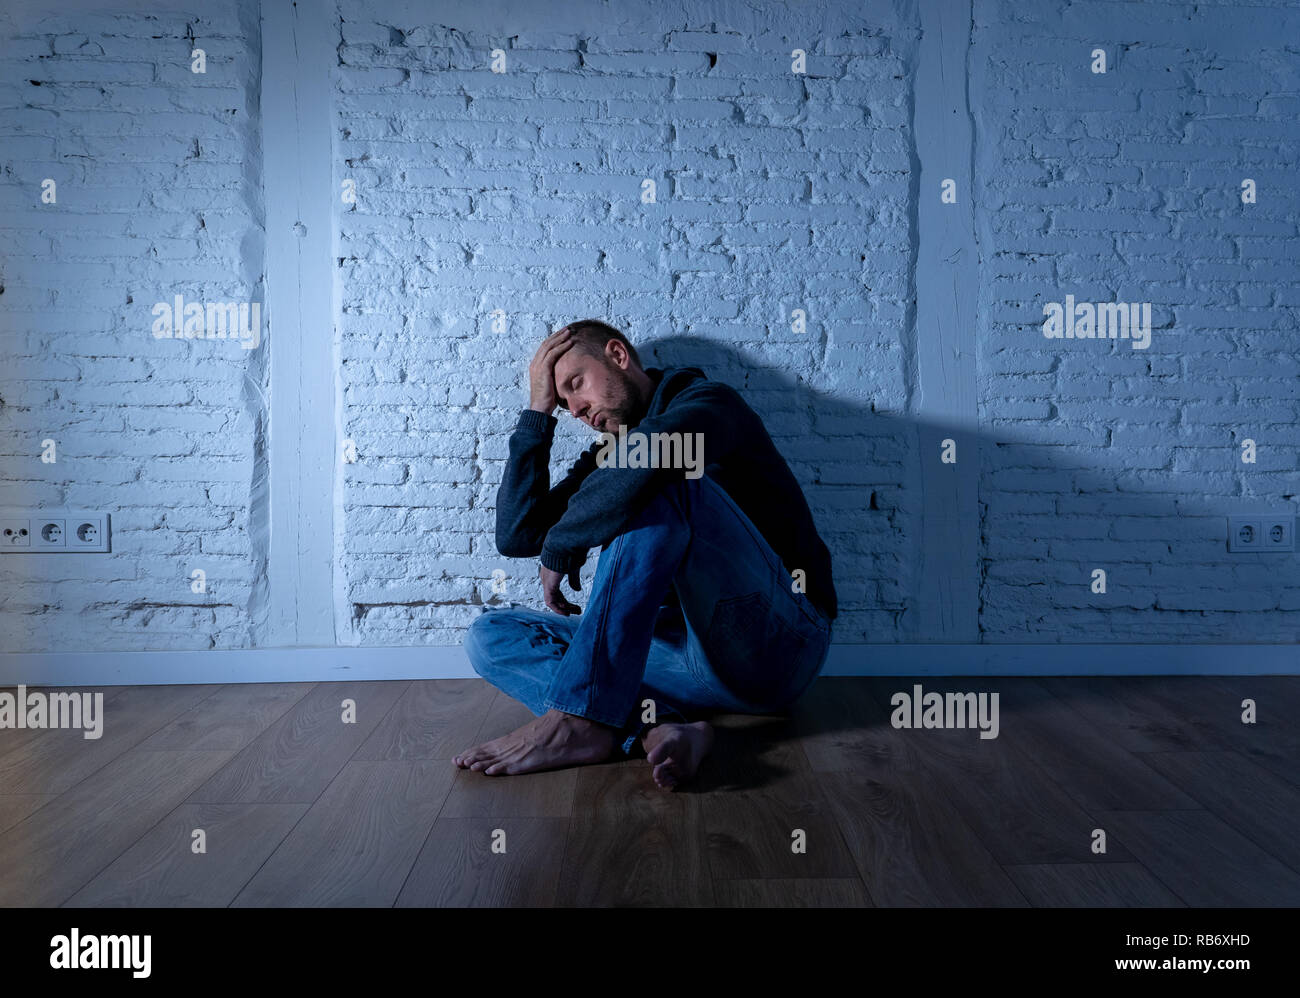 Junge verwüstet gedrückt Mann weinen traurige Gefühl verletzt leiden Depressionen in Traurigkeit emotionalen Schmerz und menschlichen Ausdruck Einsamkeit und Untröstlich Stockfoto